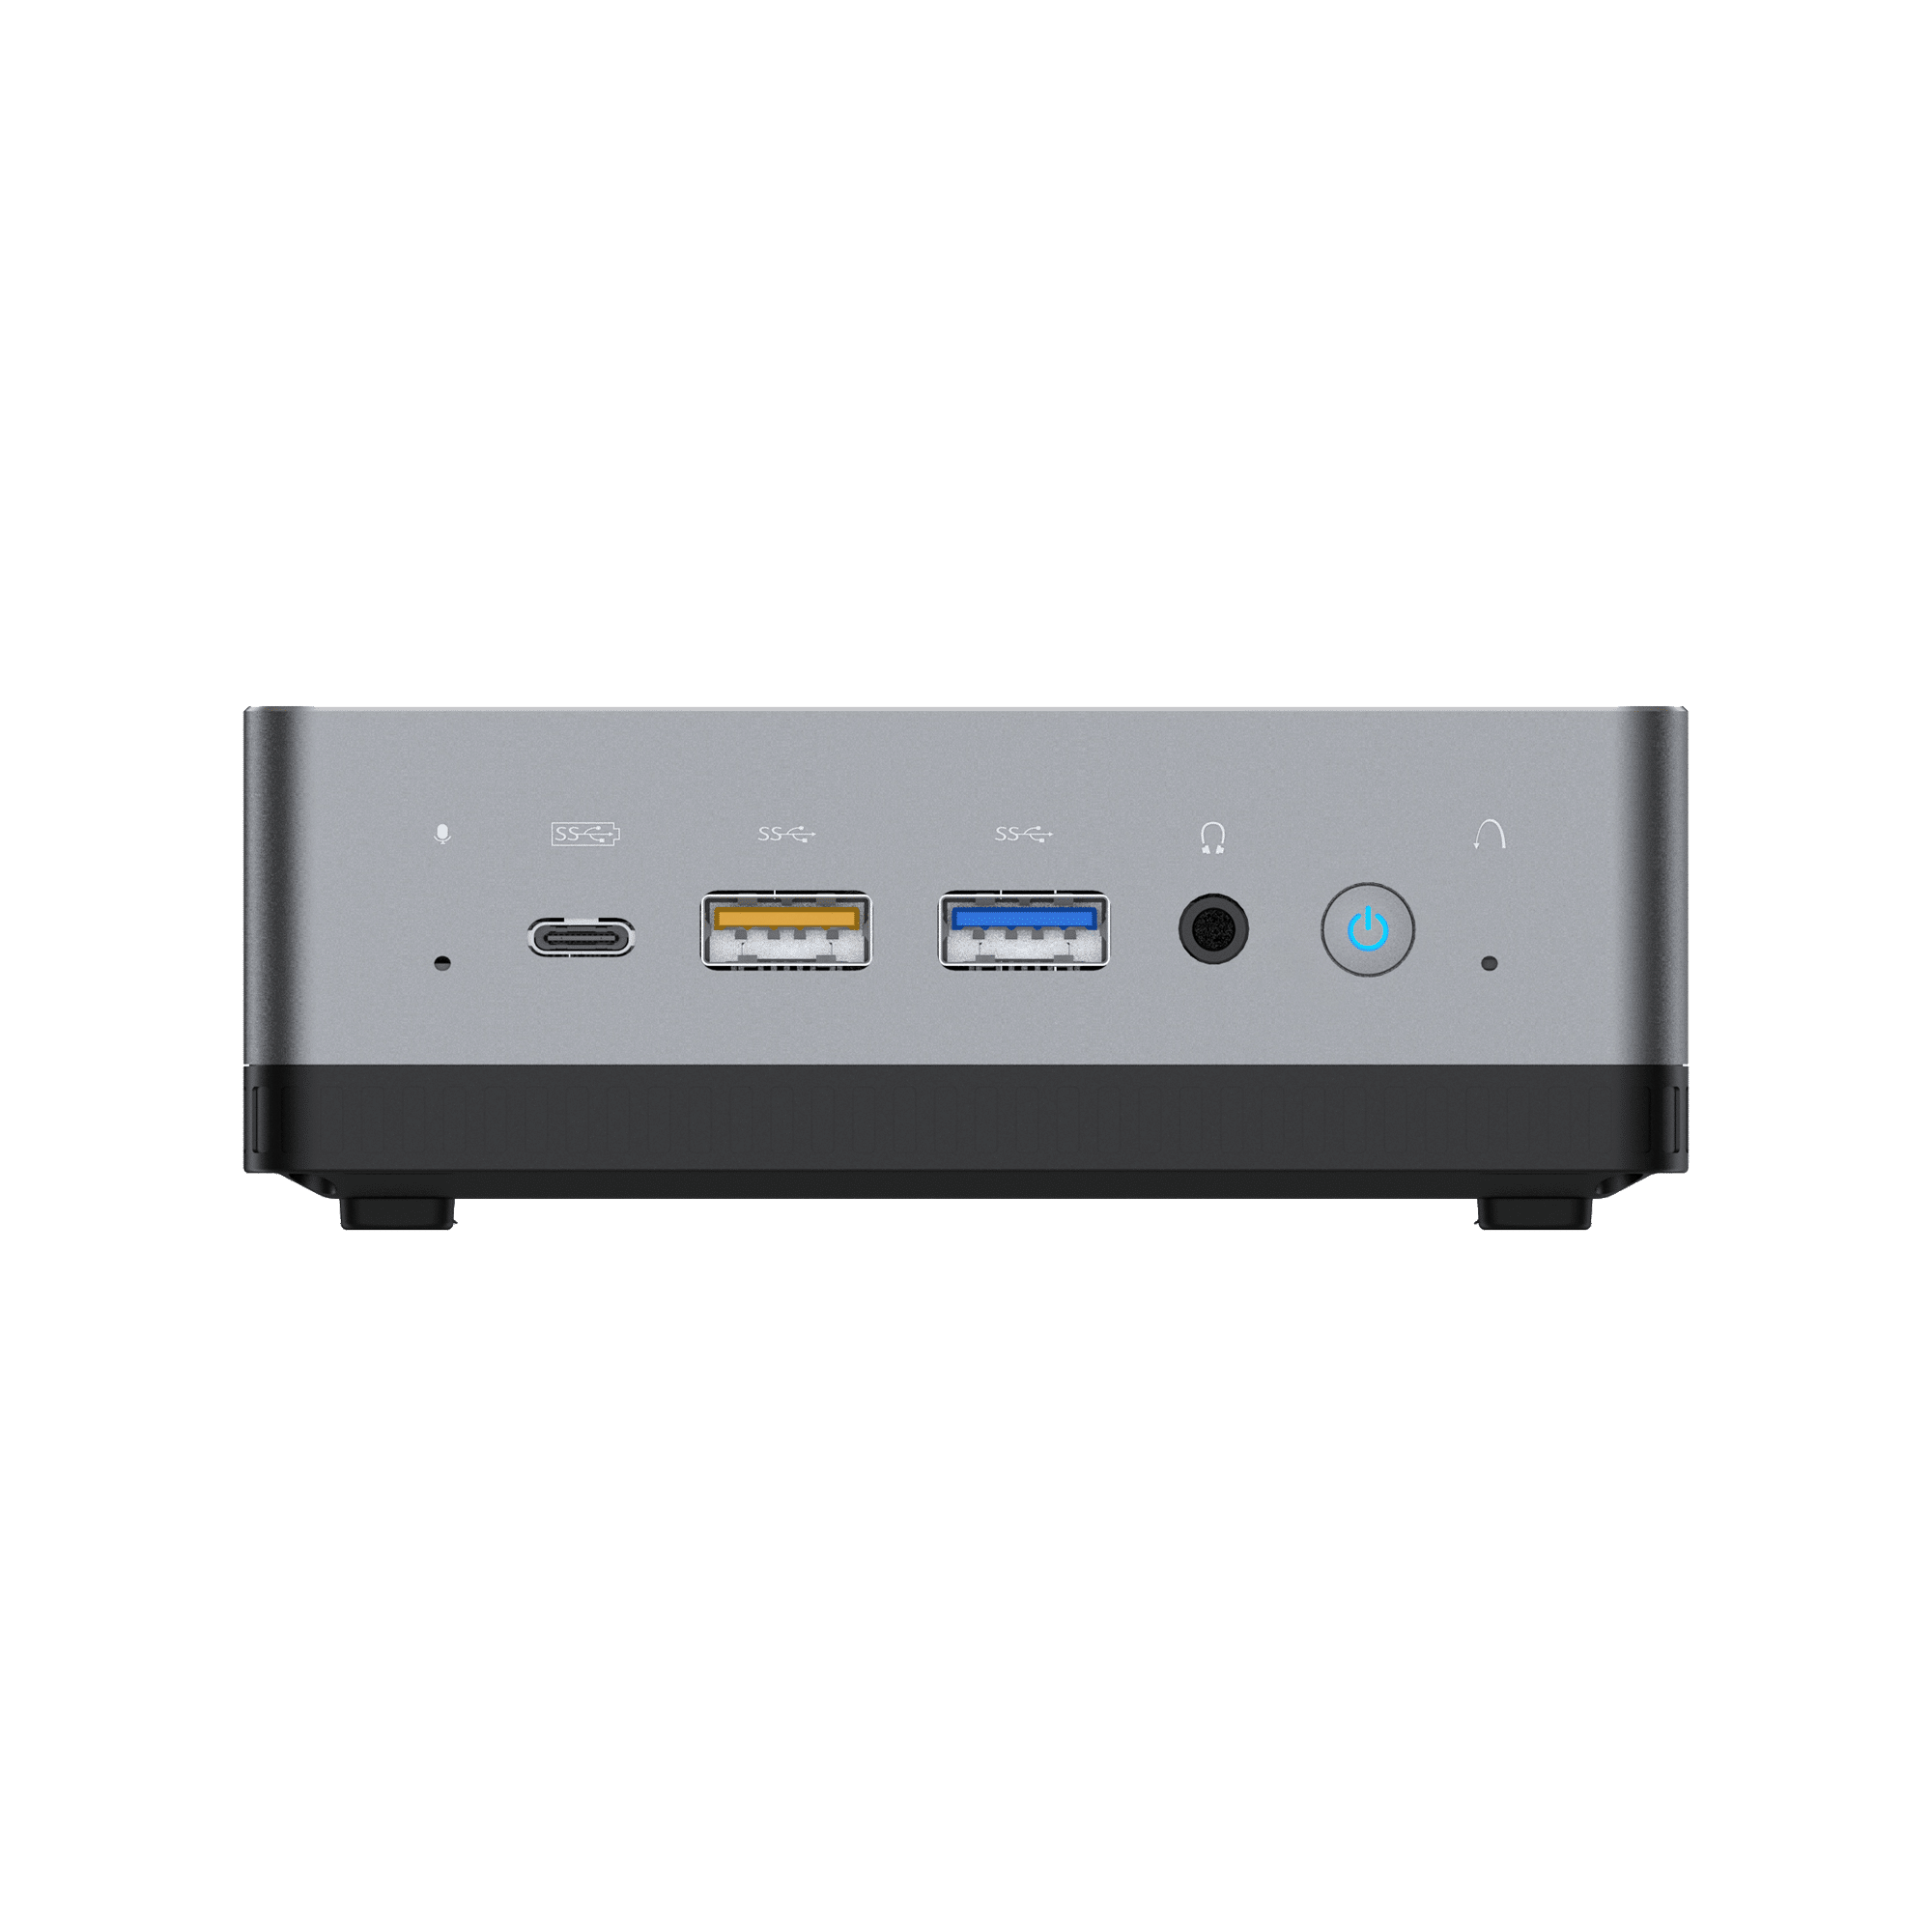 MinisForum EliteMini UM700 - Von der Vorderseite mit 1x USB Typ-C Port und 2x USB Typ-A Ports, zusammen mit einer 3.5mm Kopfhörer- und Mikrofon-Kombibuchse und einem Power-Button